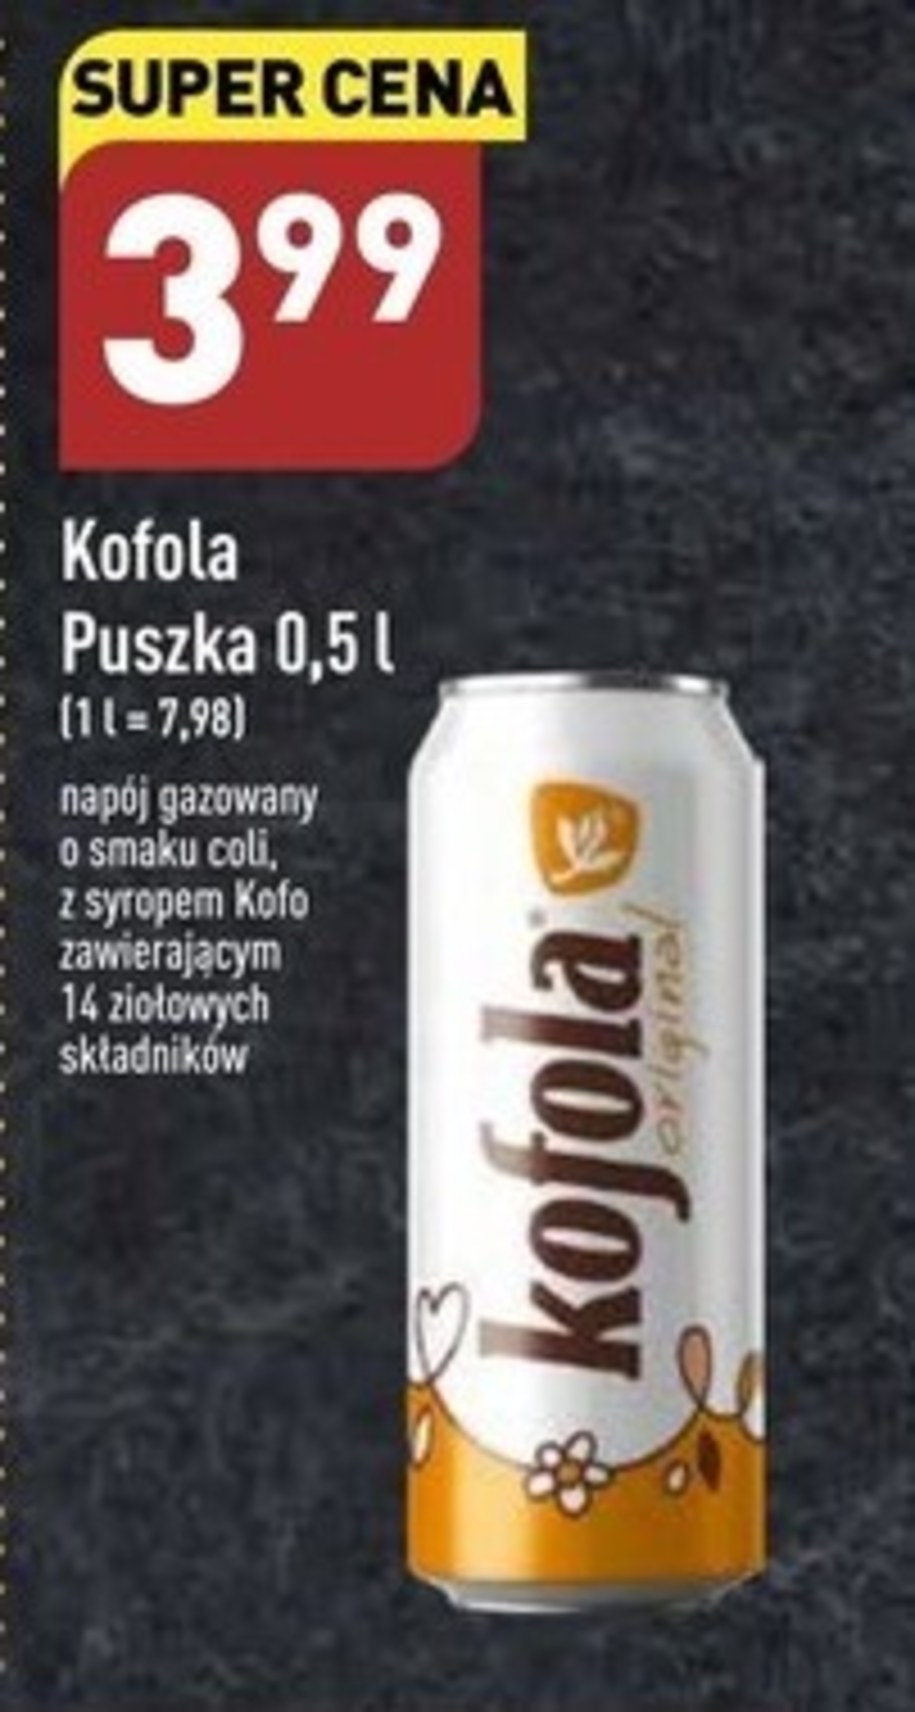 Kofola to kultowa czeska cola 